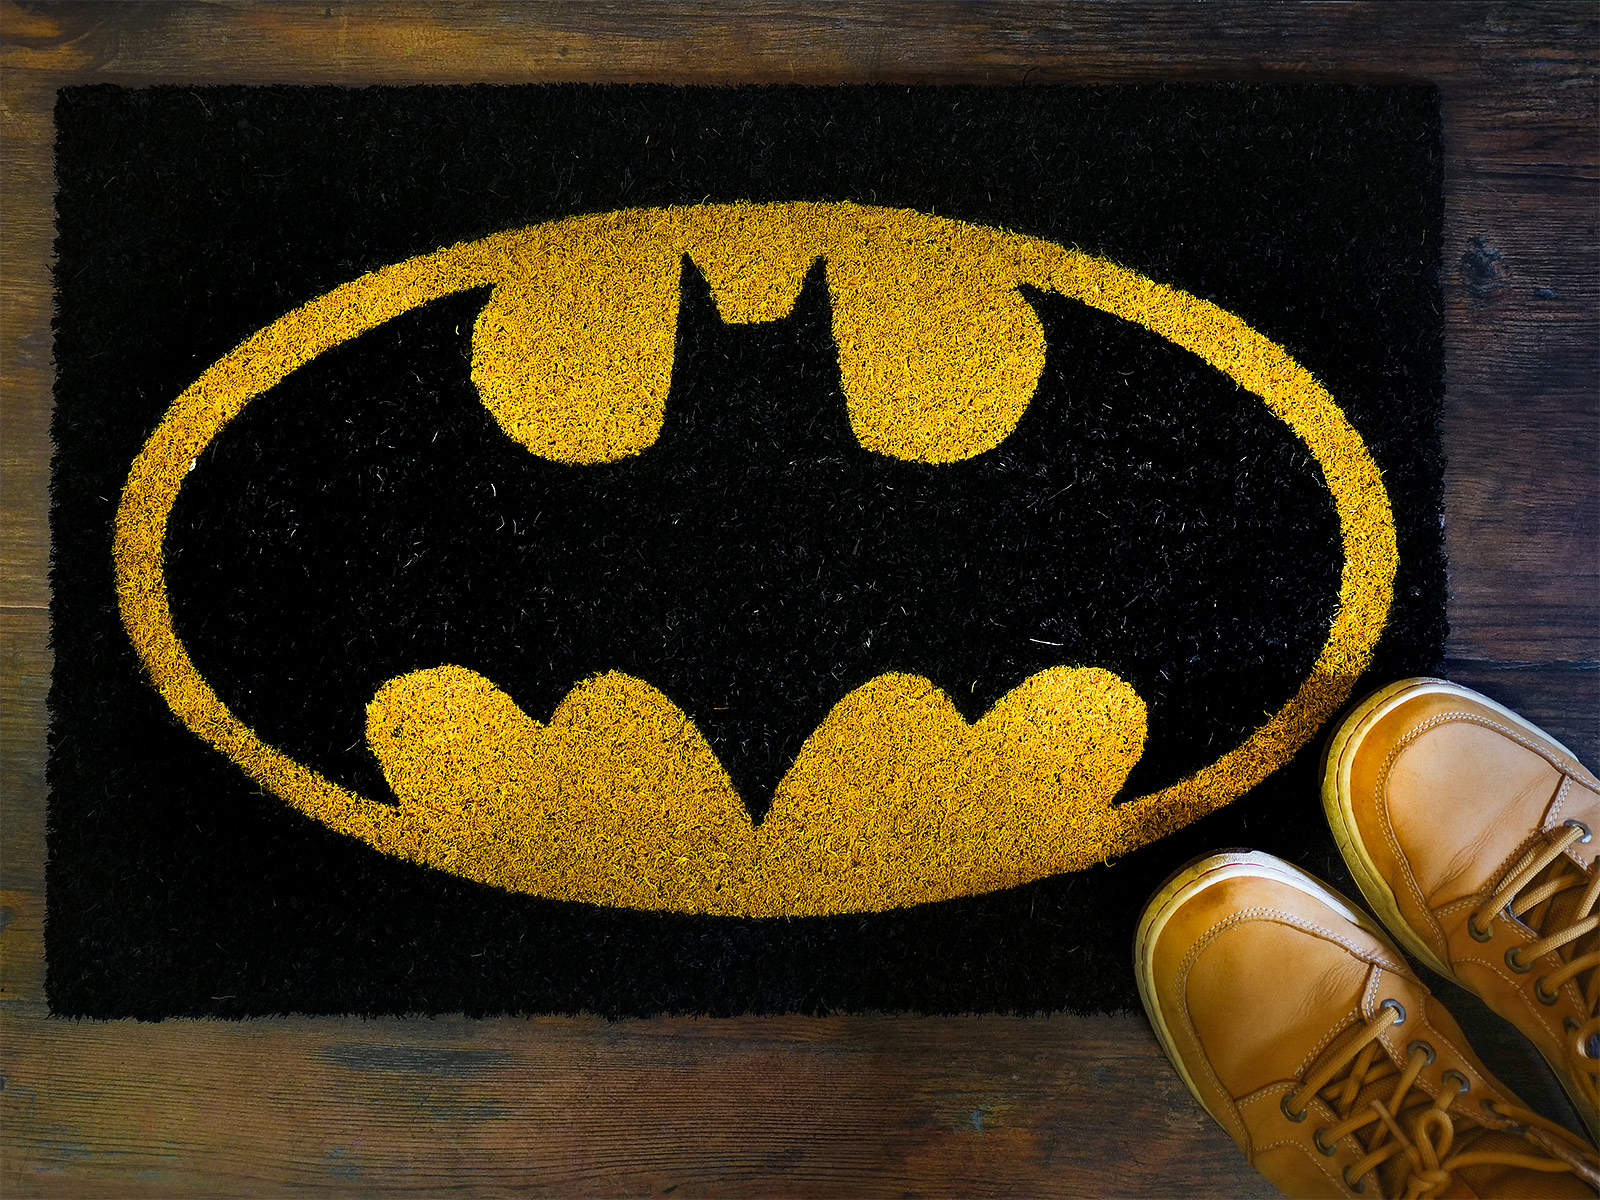 Batman - Classic Logo Doormat